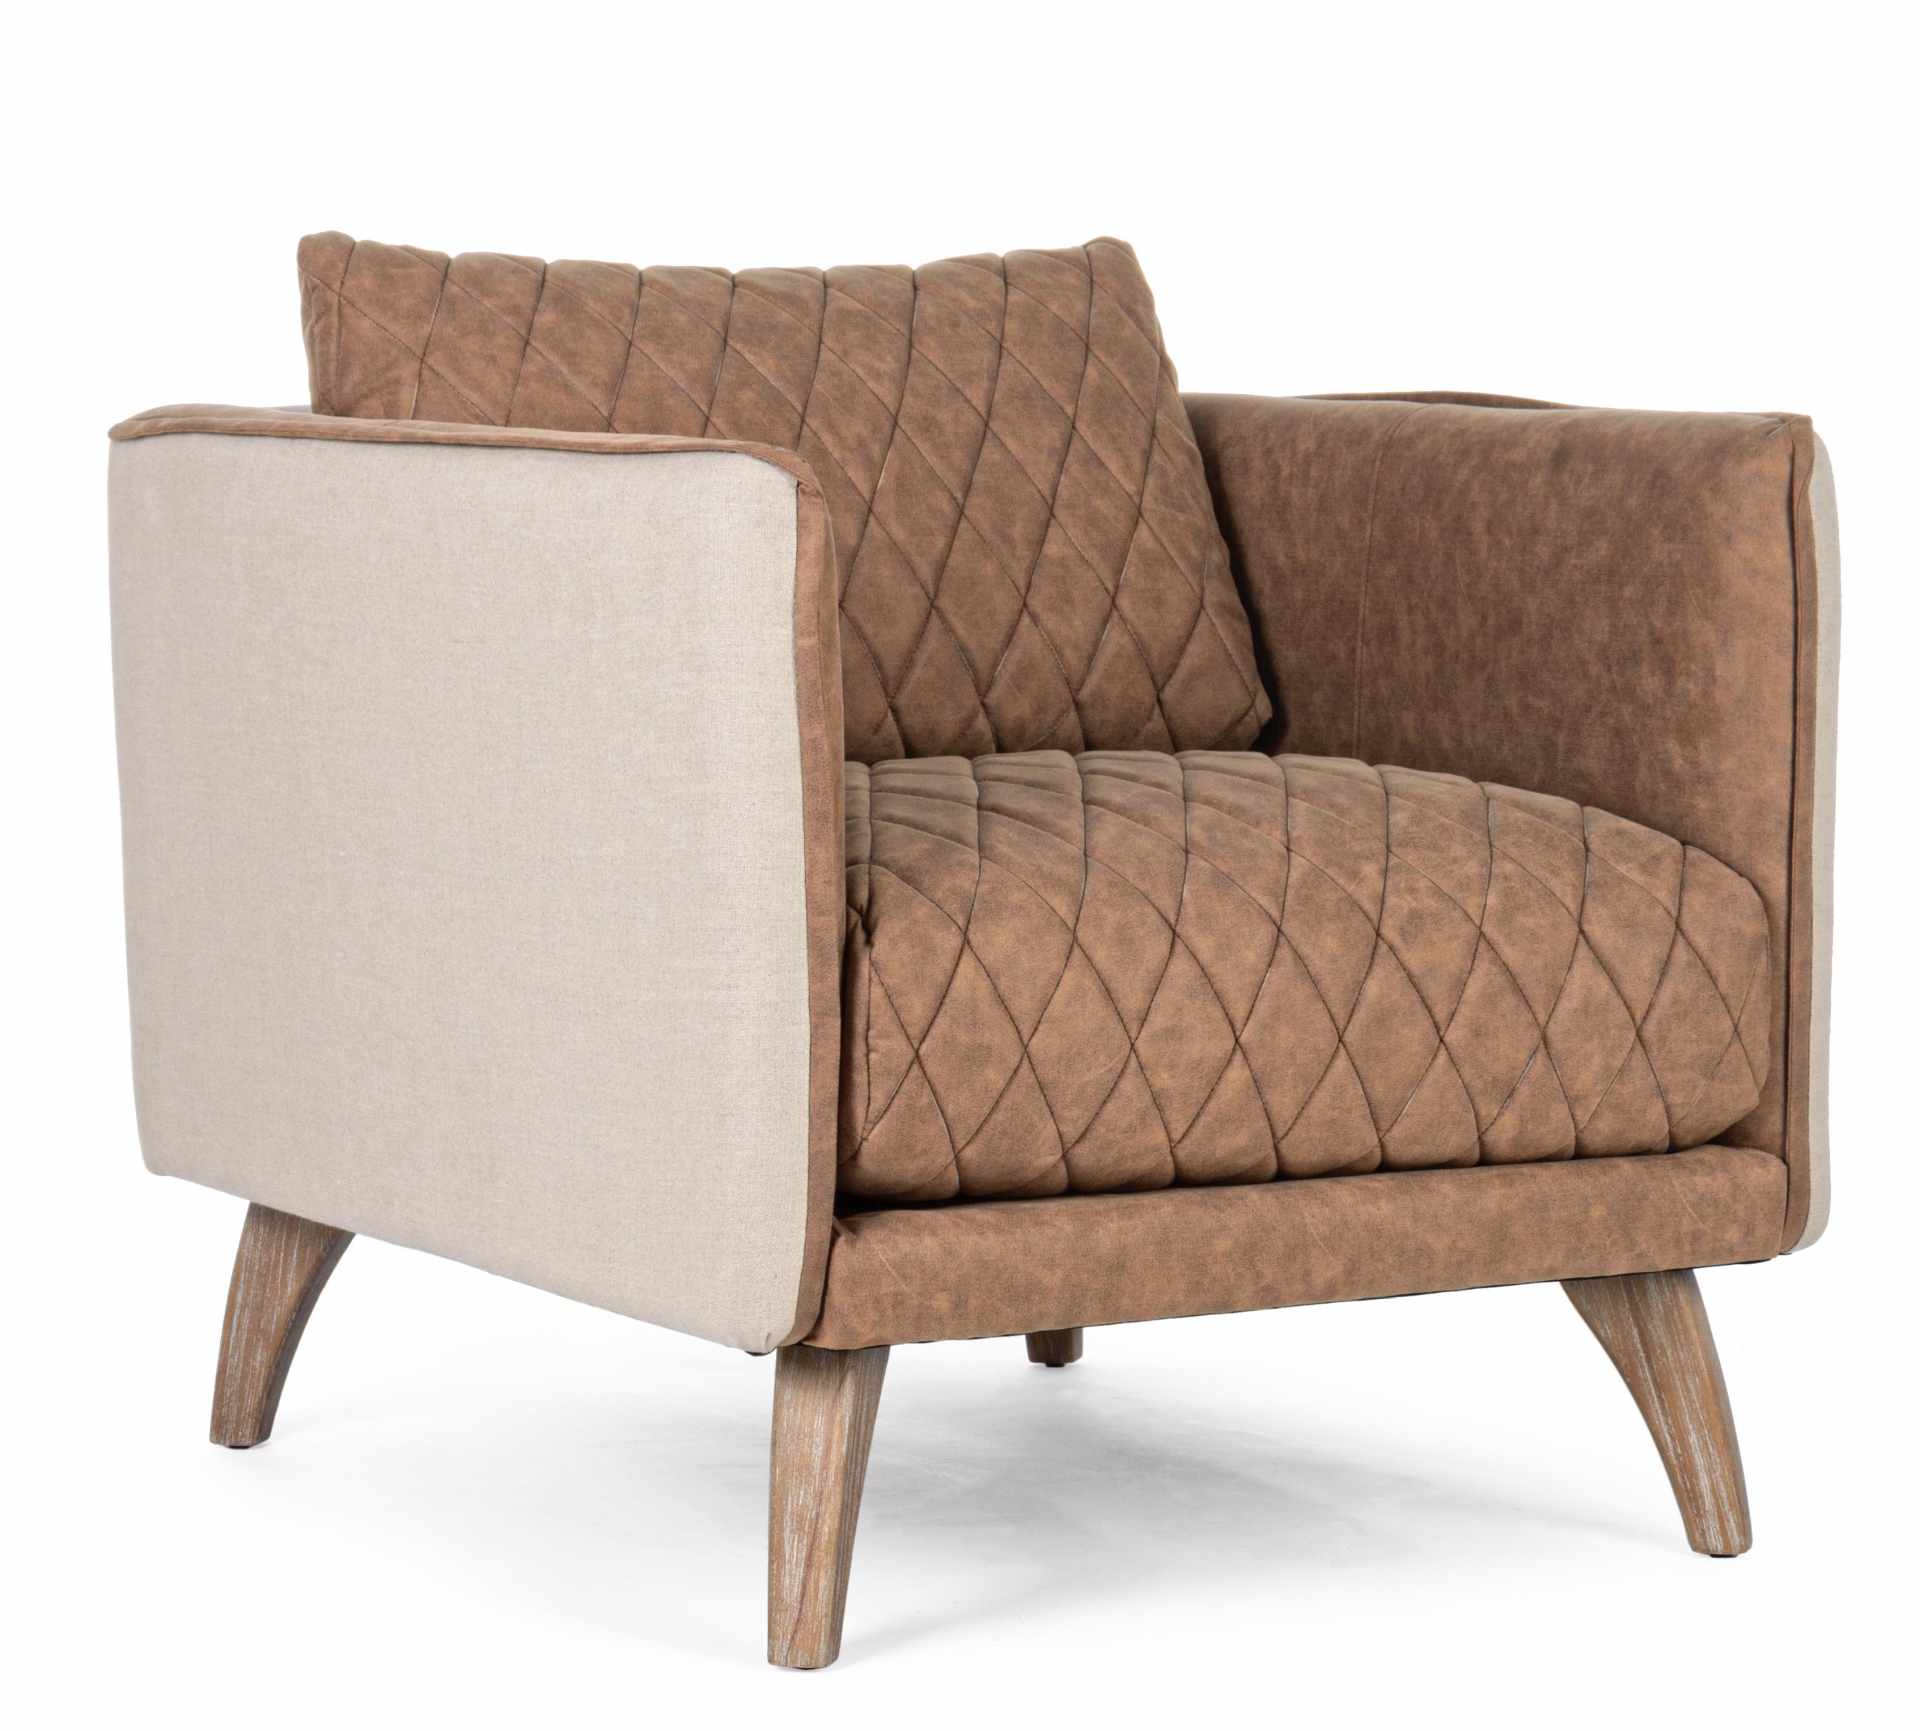 Der Sesel Helston überzeugt mit seinem klassischen Design. Gefertigt wurde er aus Kunstleder, welches einen Cognac Farbton besitzt. Das Gestell ist aus Eschenholz und hat eine natürliche Farbe. Der Sessel besitzt eine Sitzhöhe von 47 cm. Die Breite beträg